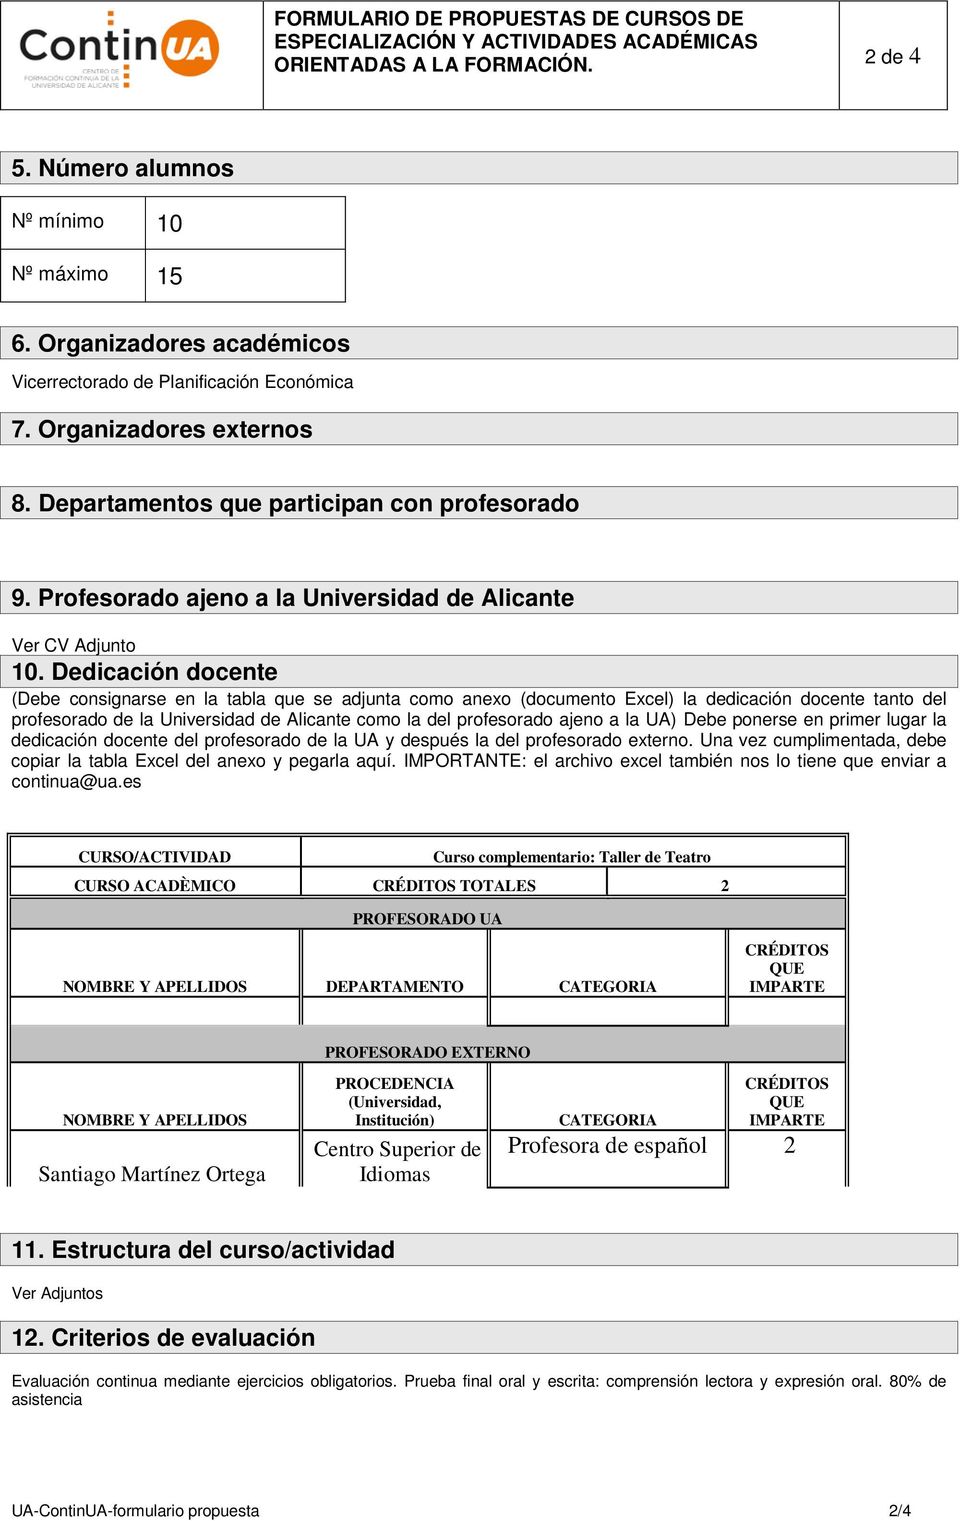 Dedicación docente (Debe consignarse en la tabla que se adjunta como anexo (documento Excel) la dedicación docente tanto del profesorado de la Universidad de Alicante como la del profesorado ajeno a